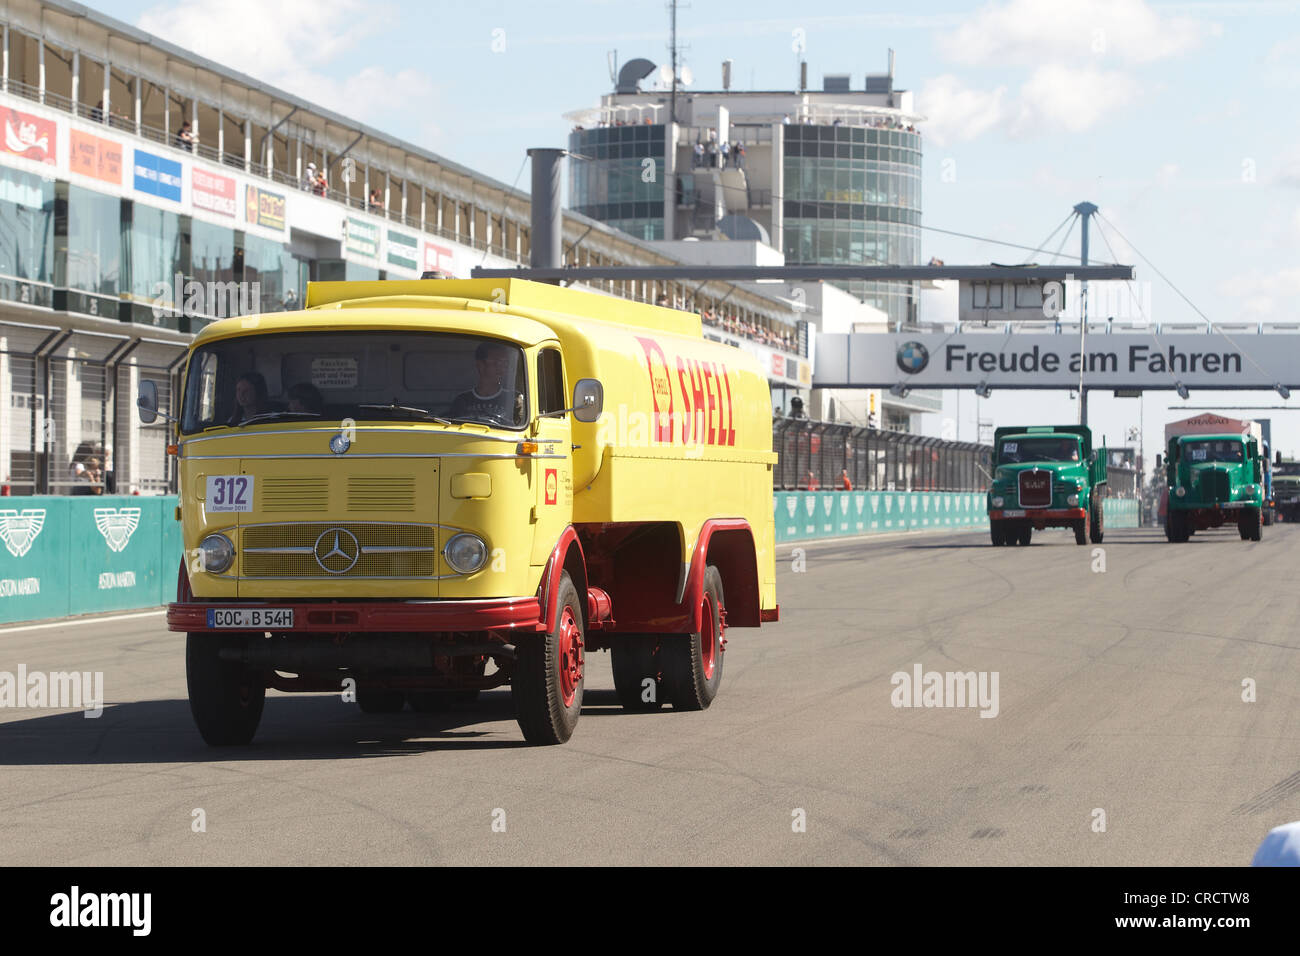 Défilé de camions vintage à l'Truck-Grand-prix, Nuerburgring race track, Rhénanie-Palatinat, Allemagne, Europe Banque D'Images